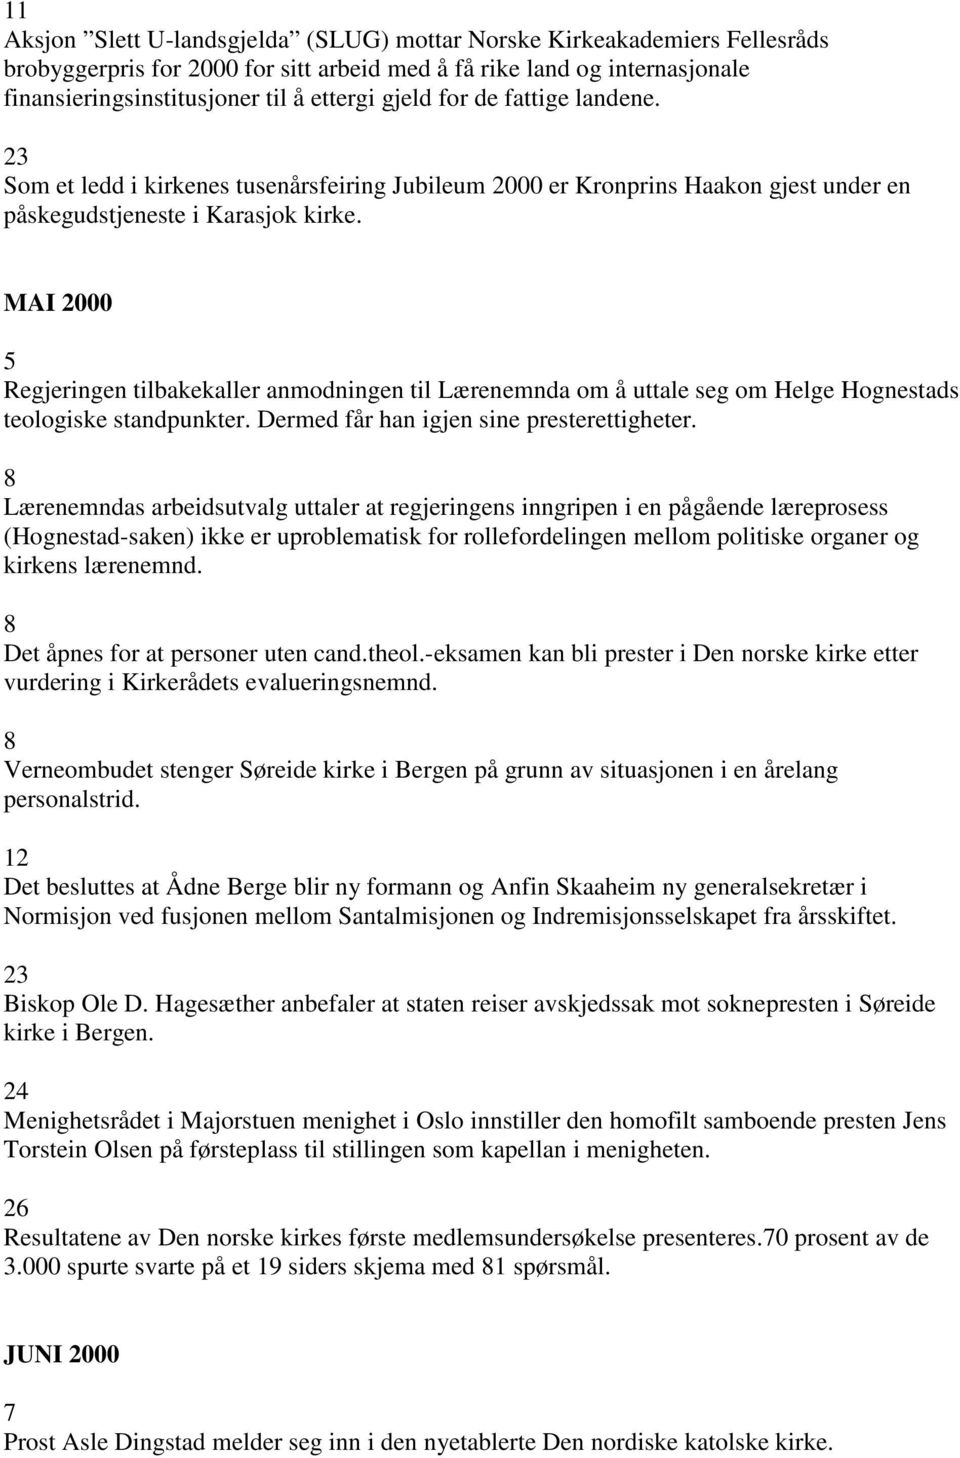 MAI 2000 5 Regjeringen tilbakekaller anmodningen til Lærenemnda om å uttale seg om Helge Hognestads teologiske standpunkter. Dermed får han igjen sine presterettigheter.